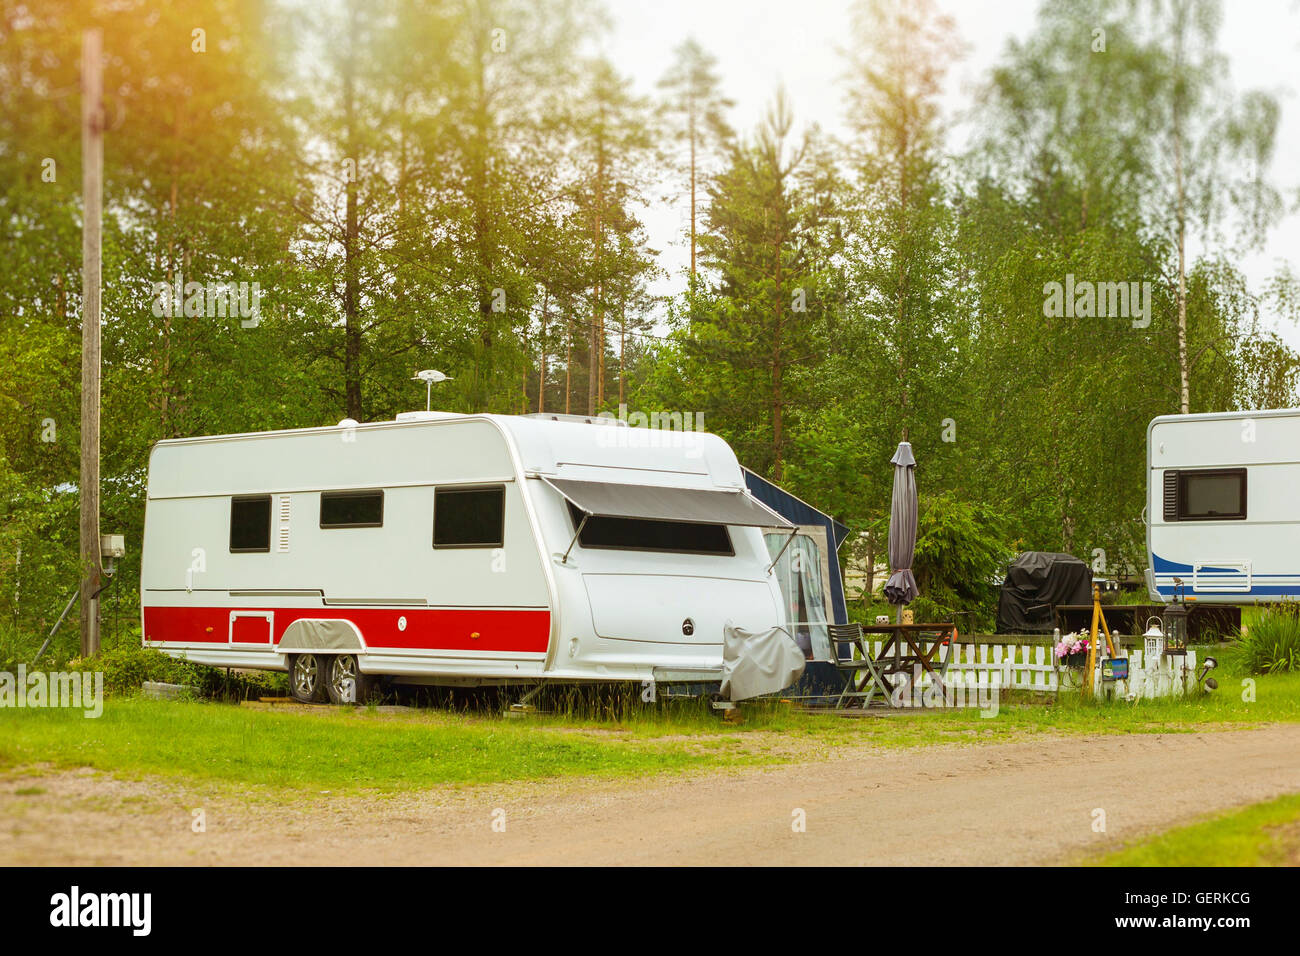 Sommer-outdoor-Aktivitäten, skandinavischen Urlaub im eigenen Haus auf Rädern. Geparkt auf der grünen Wiese im Campingplatz Camping vans und Zelte Stockfoto